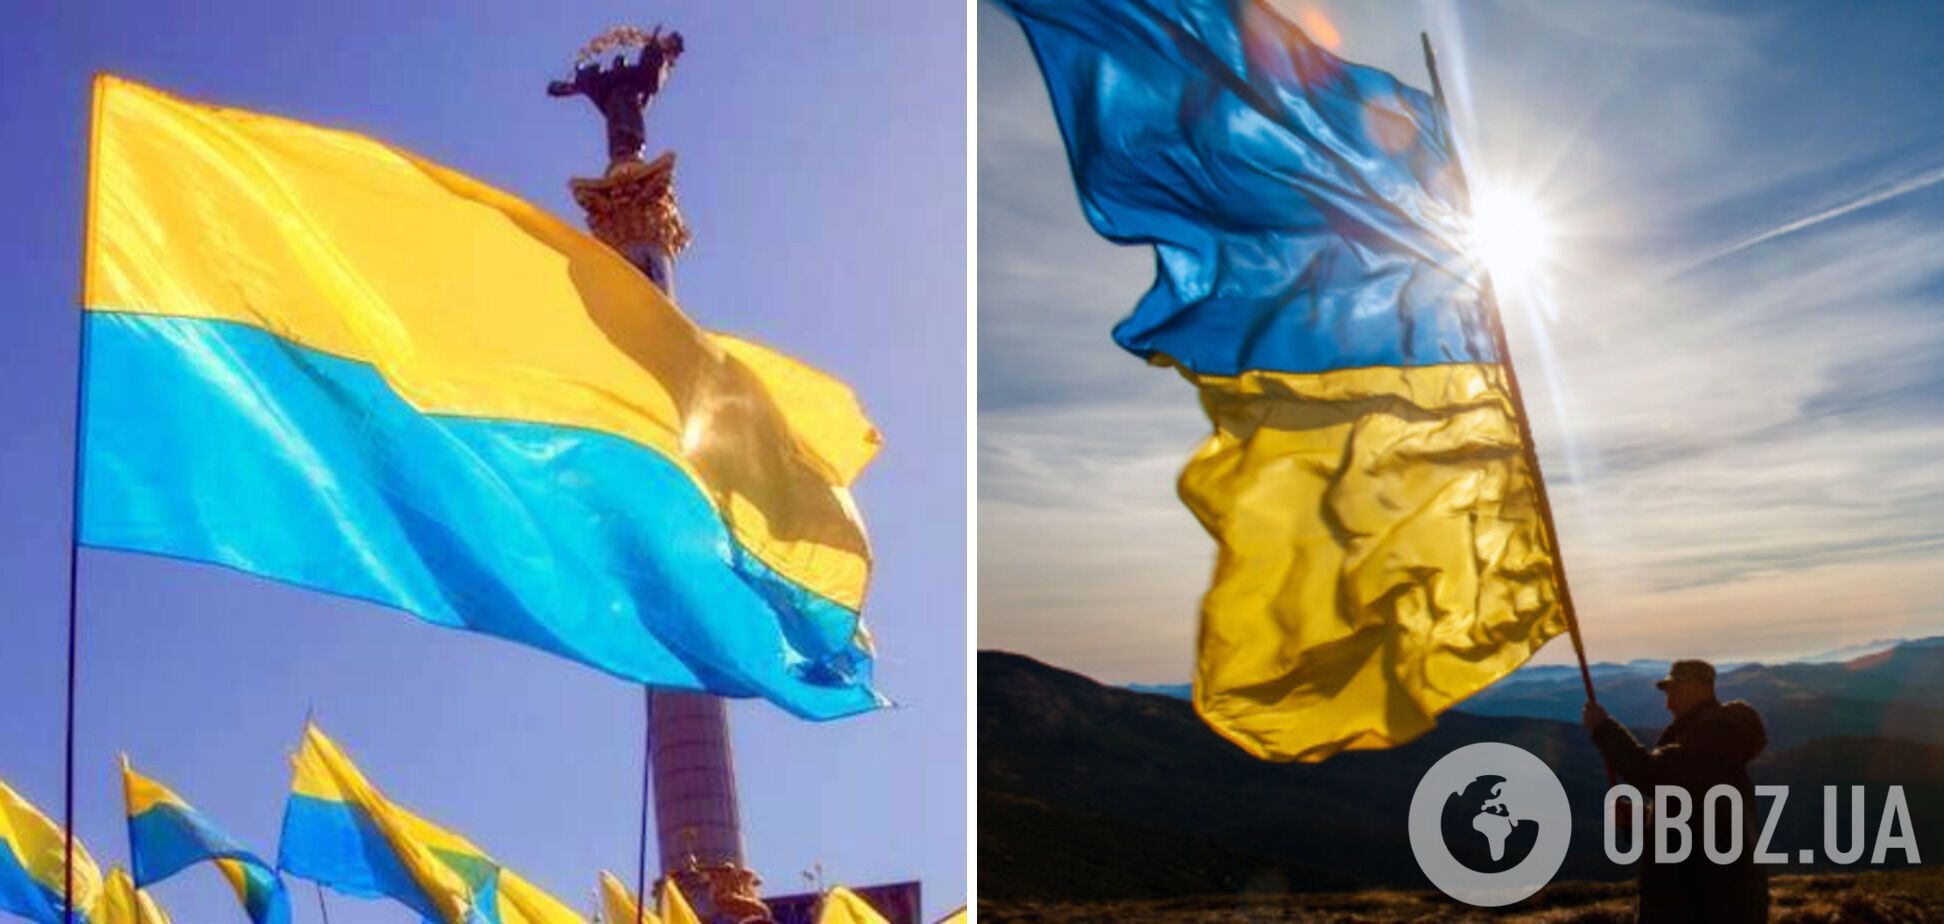 Ліворуч жовто-синя варіація прапору, яку приписують Грушевському, а праворуч – звичний синьо-жовтий варіант стягу, який використовували за Скоропадського.